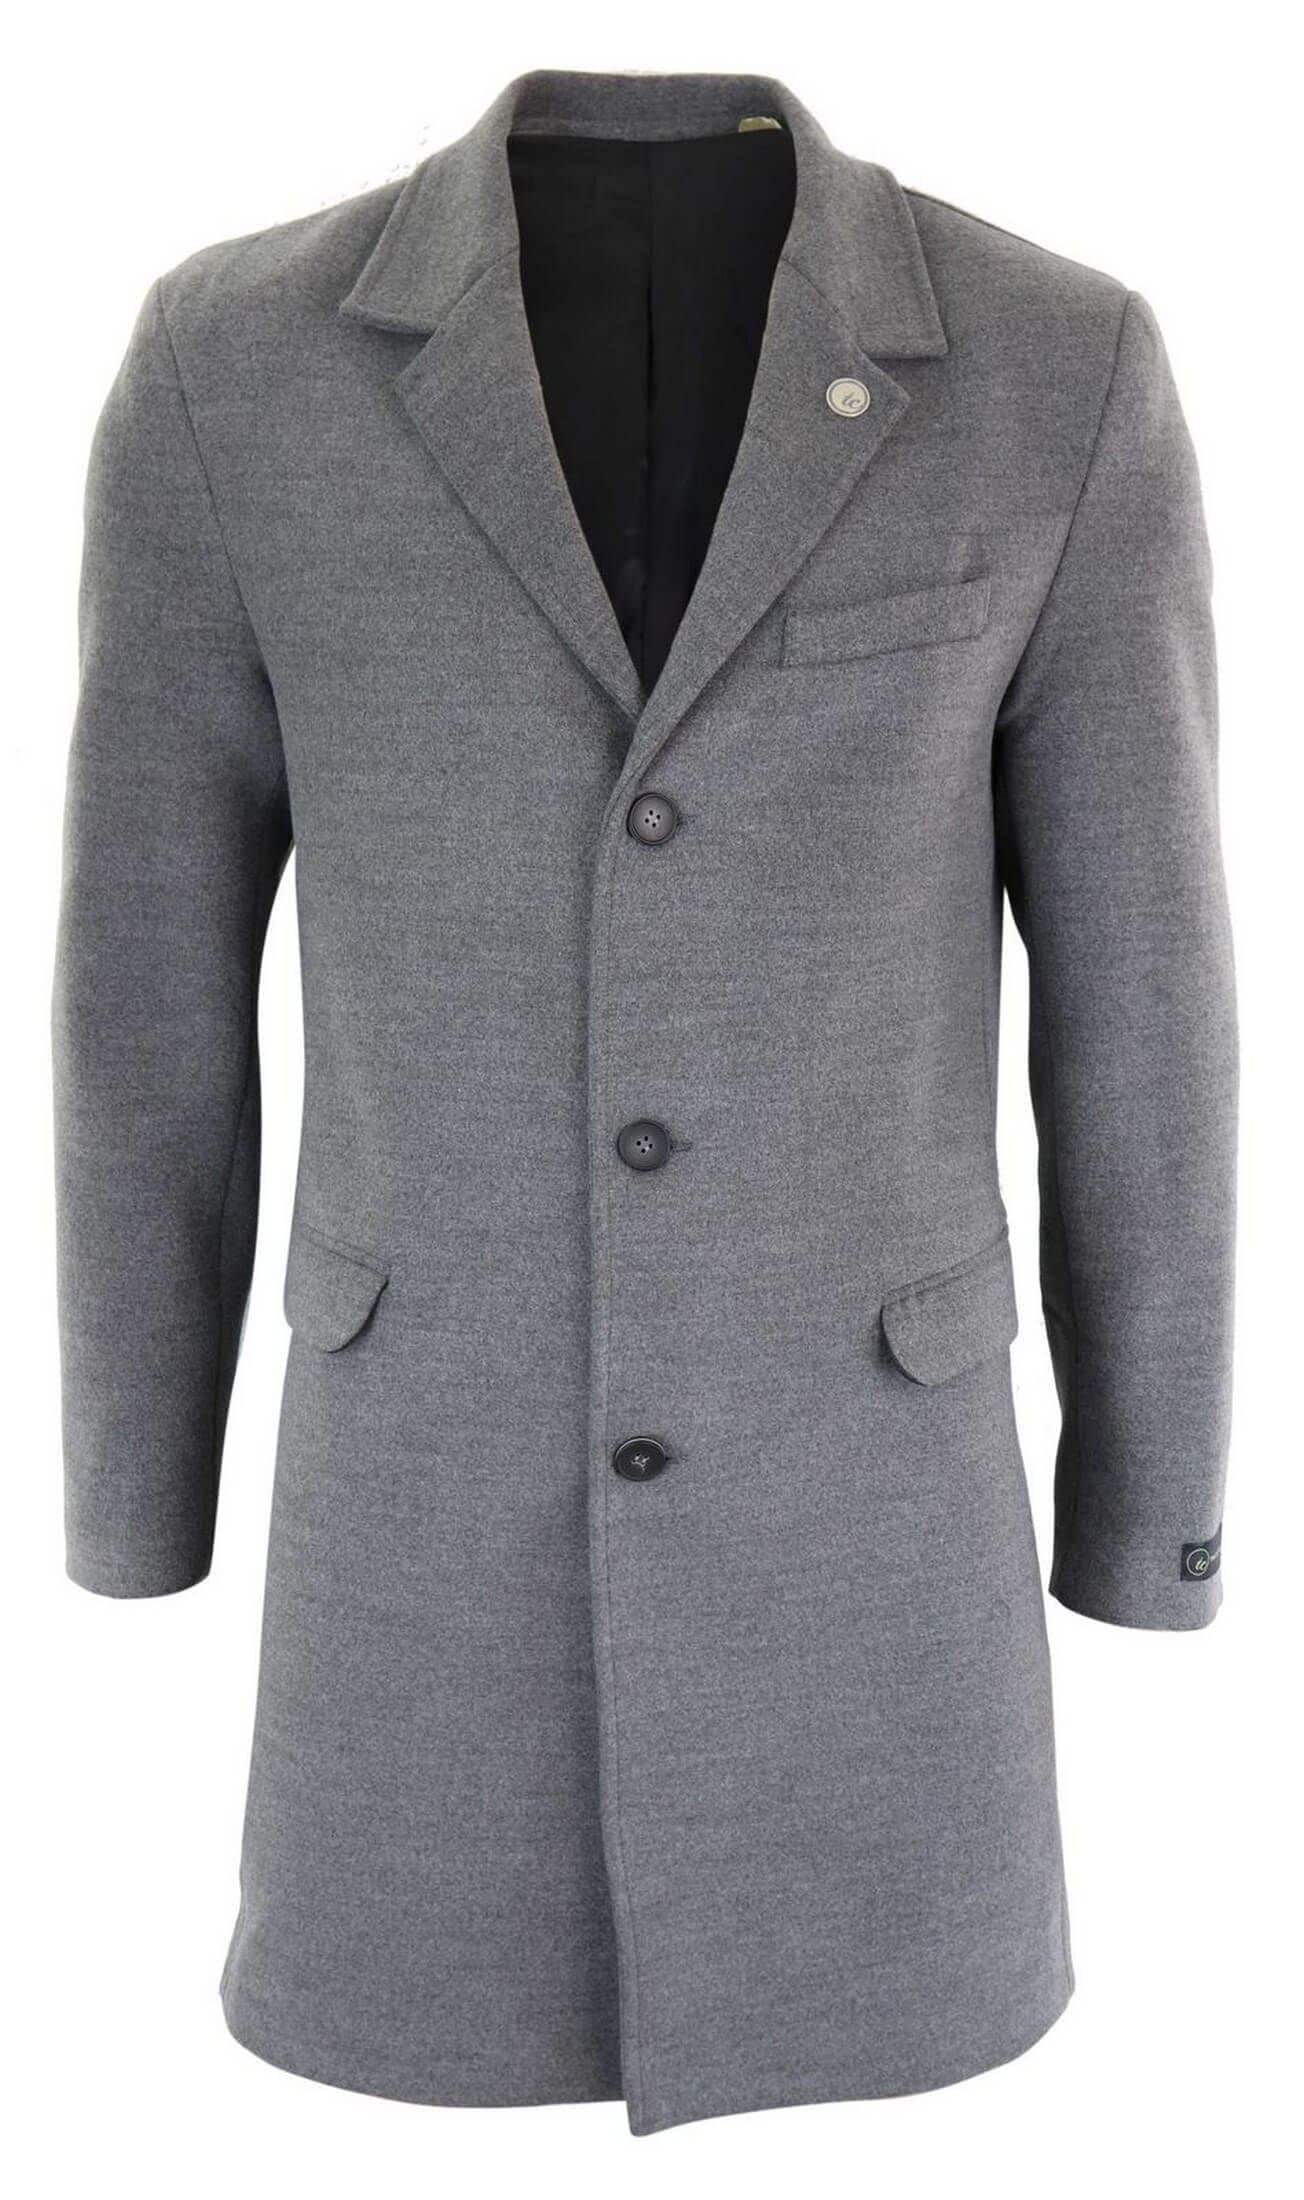 Men's Classic Wool Long Overcoat-Grey: Buy Online - Happy Gentleman